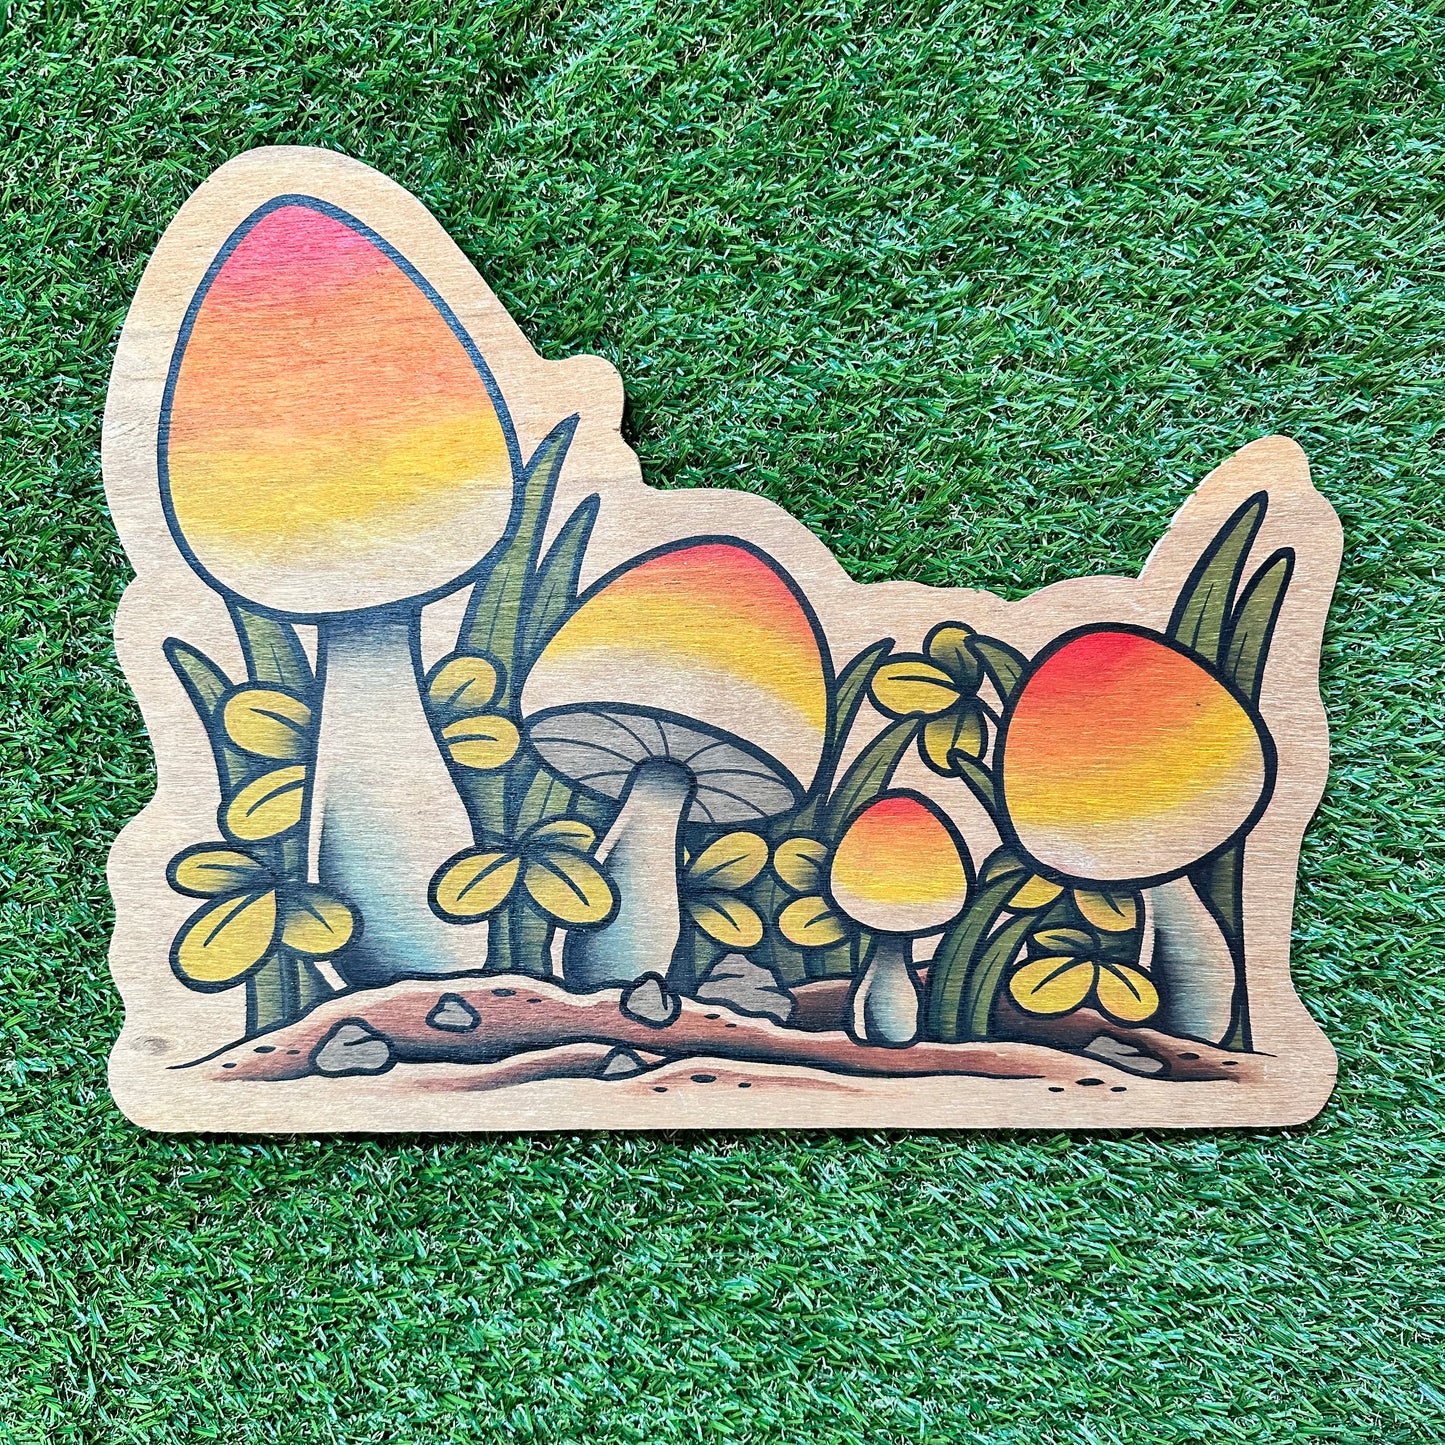 Original Painting - Mushrooms on Wood